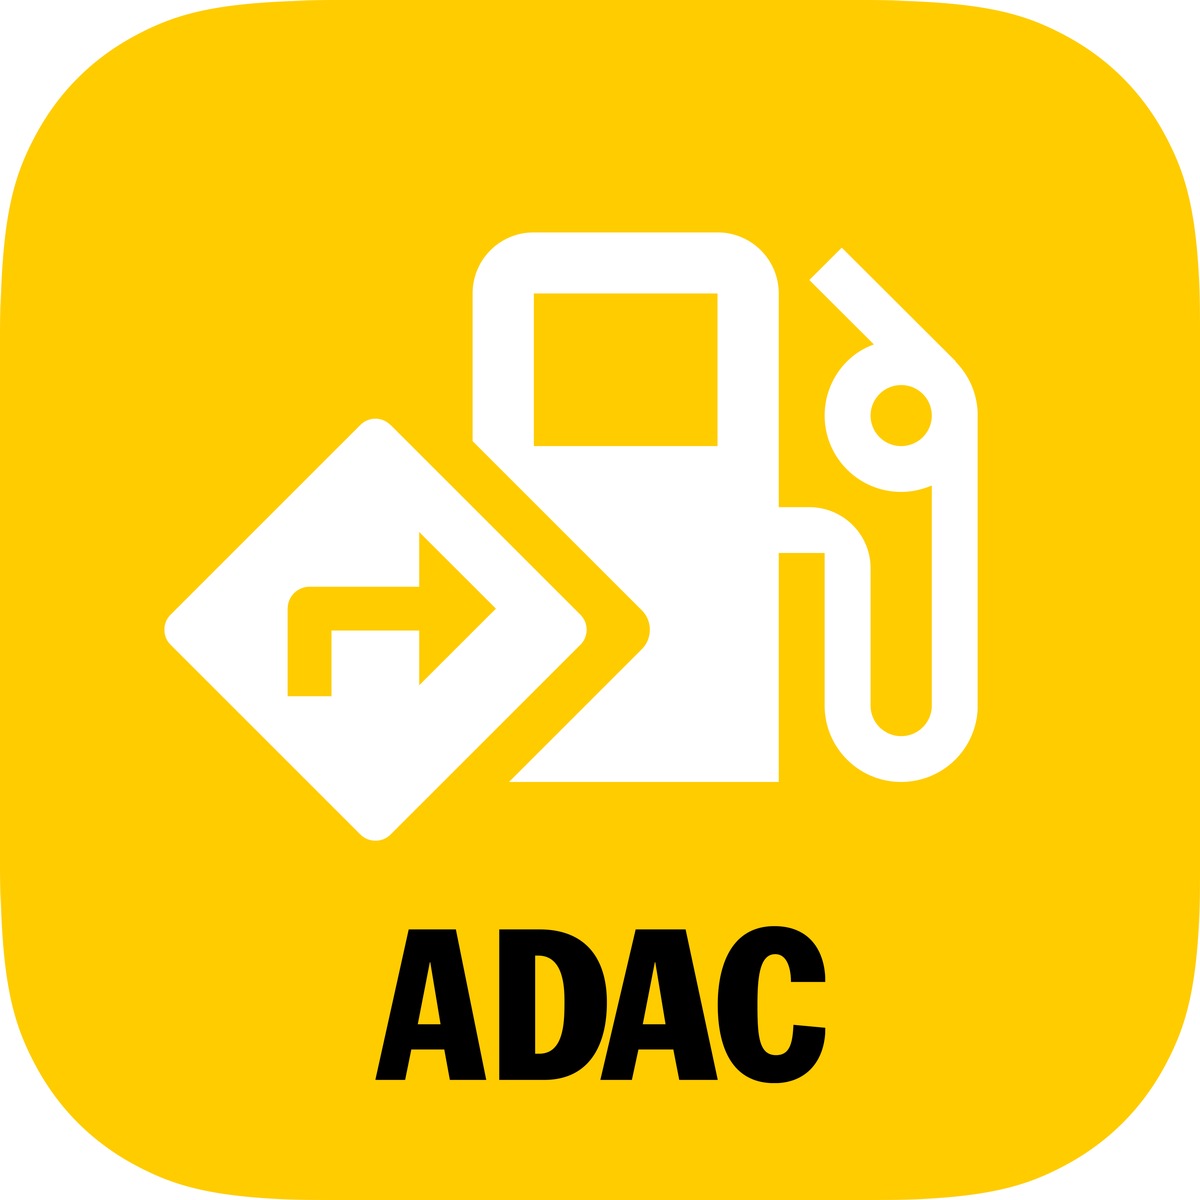 ADAC Spritpreise App und Maps werden eins - finde die günstigste Tankstelle